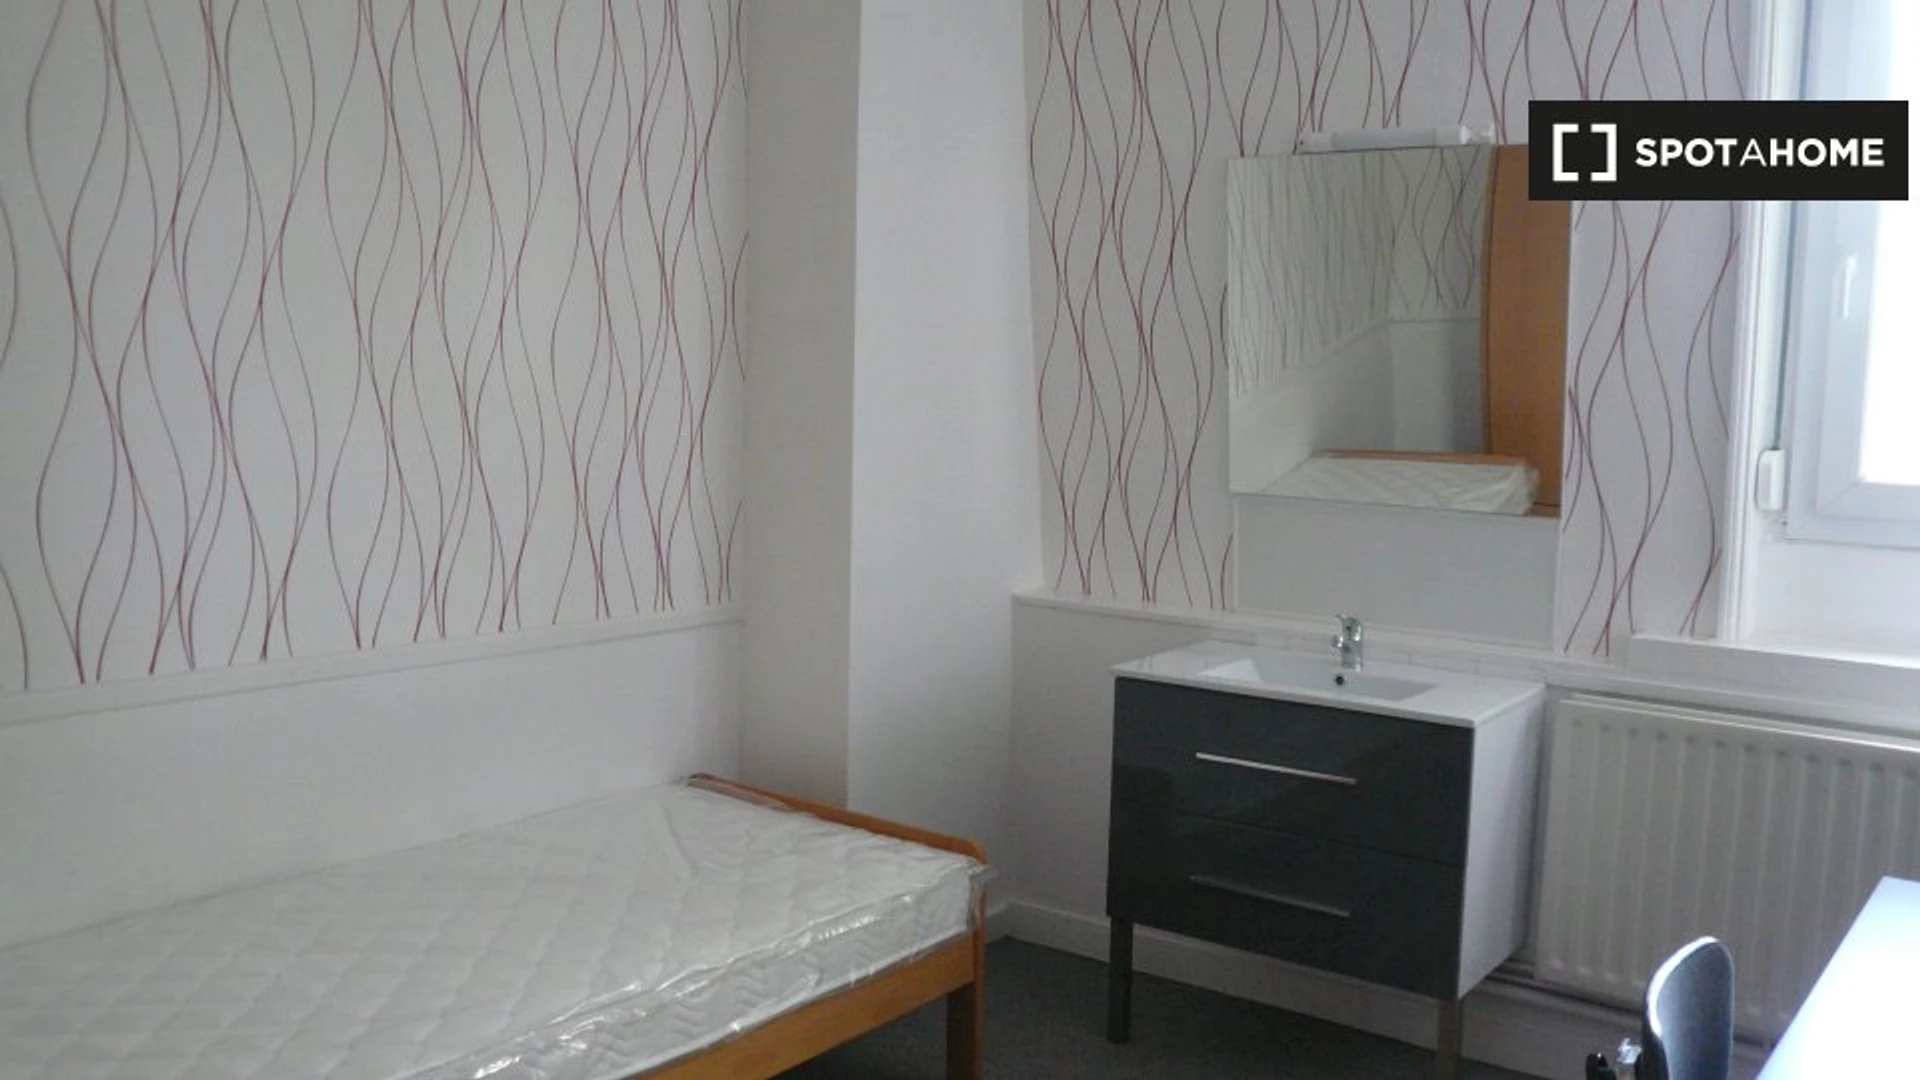 Lille de çift kişilik yataklı kiralık oda